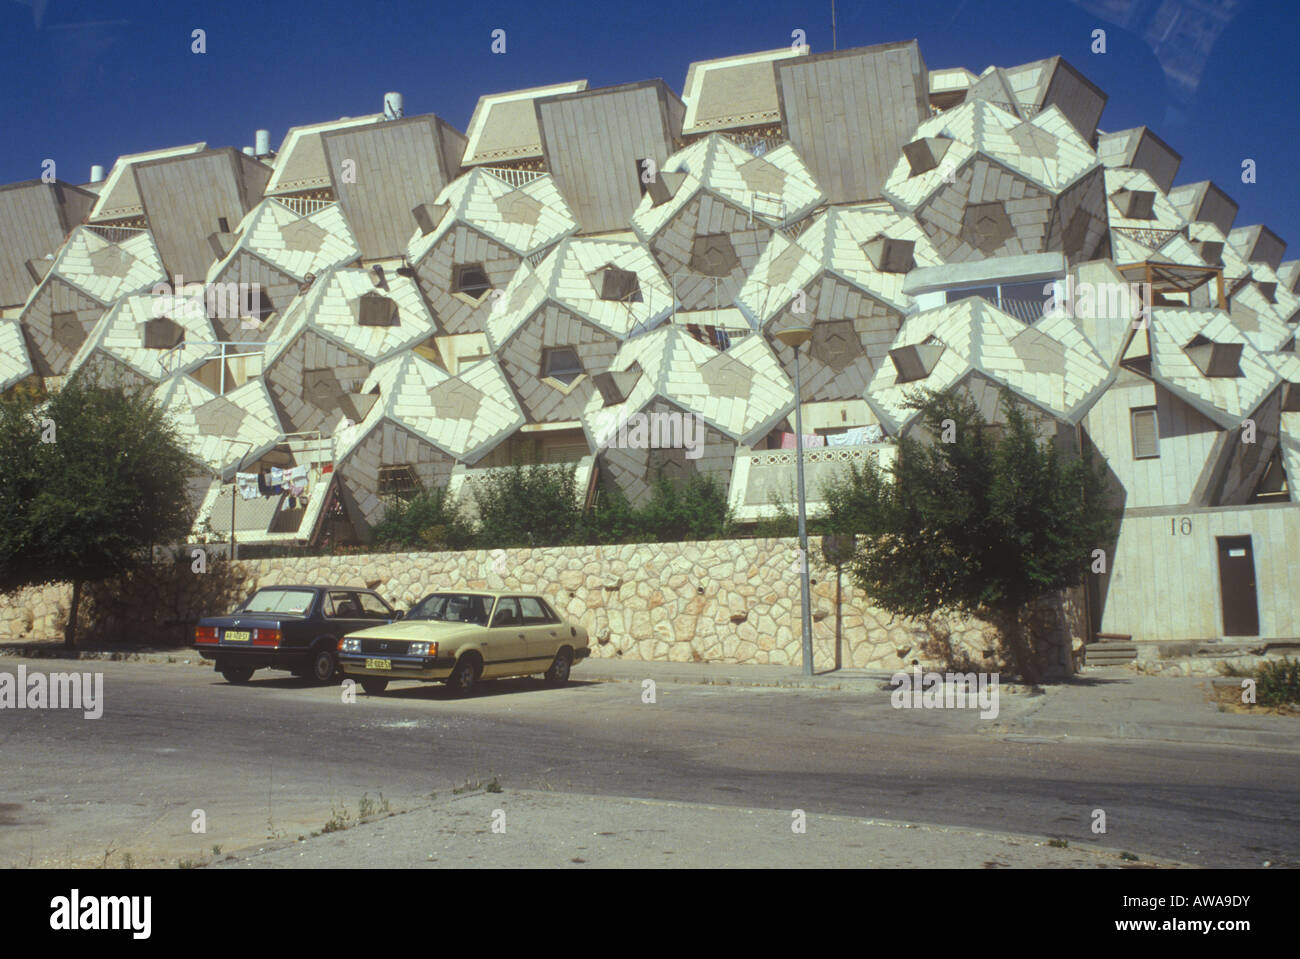 1970 habitations préfabriquées israélien en unités géométriques polygonales près de Jérusalem Banque D'Images